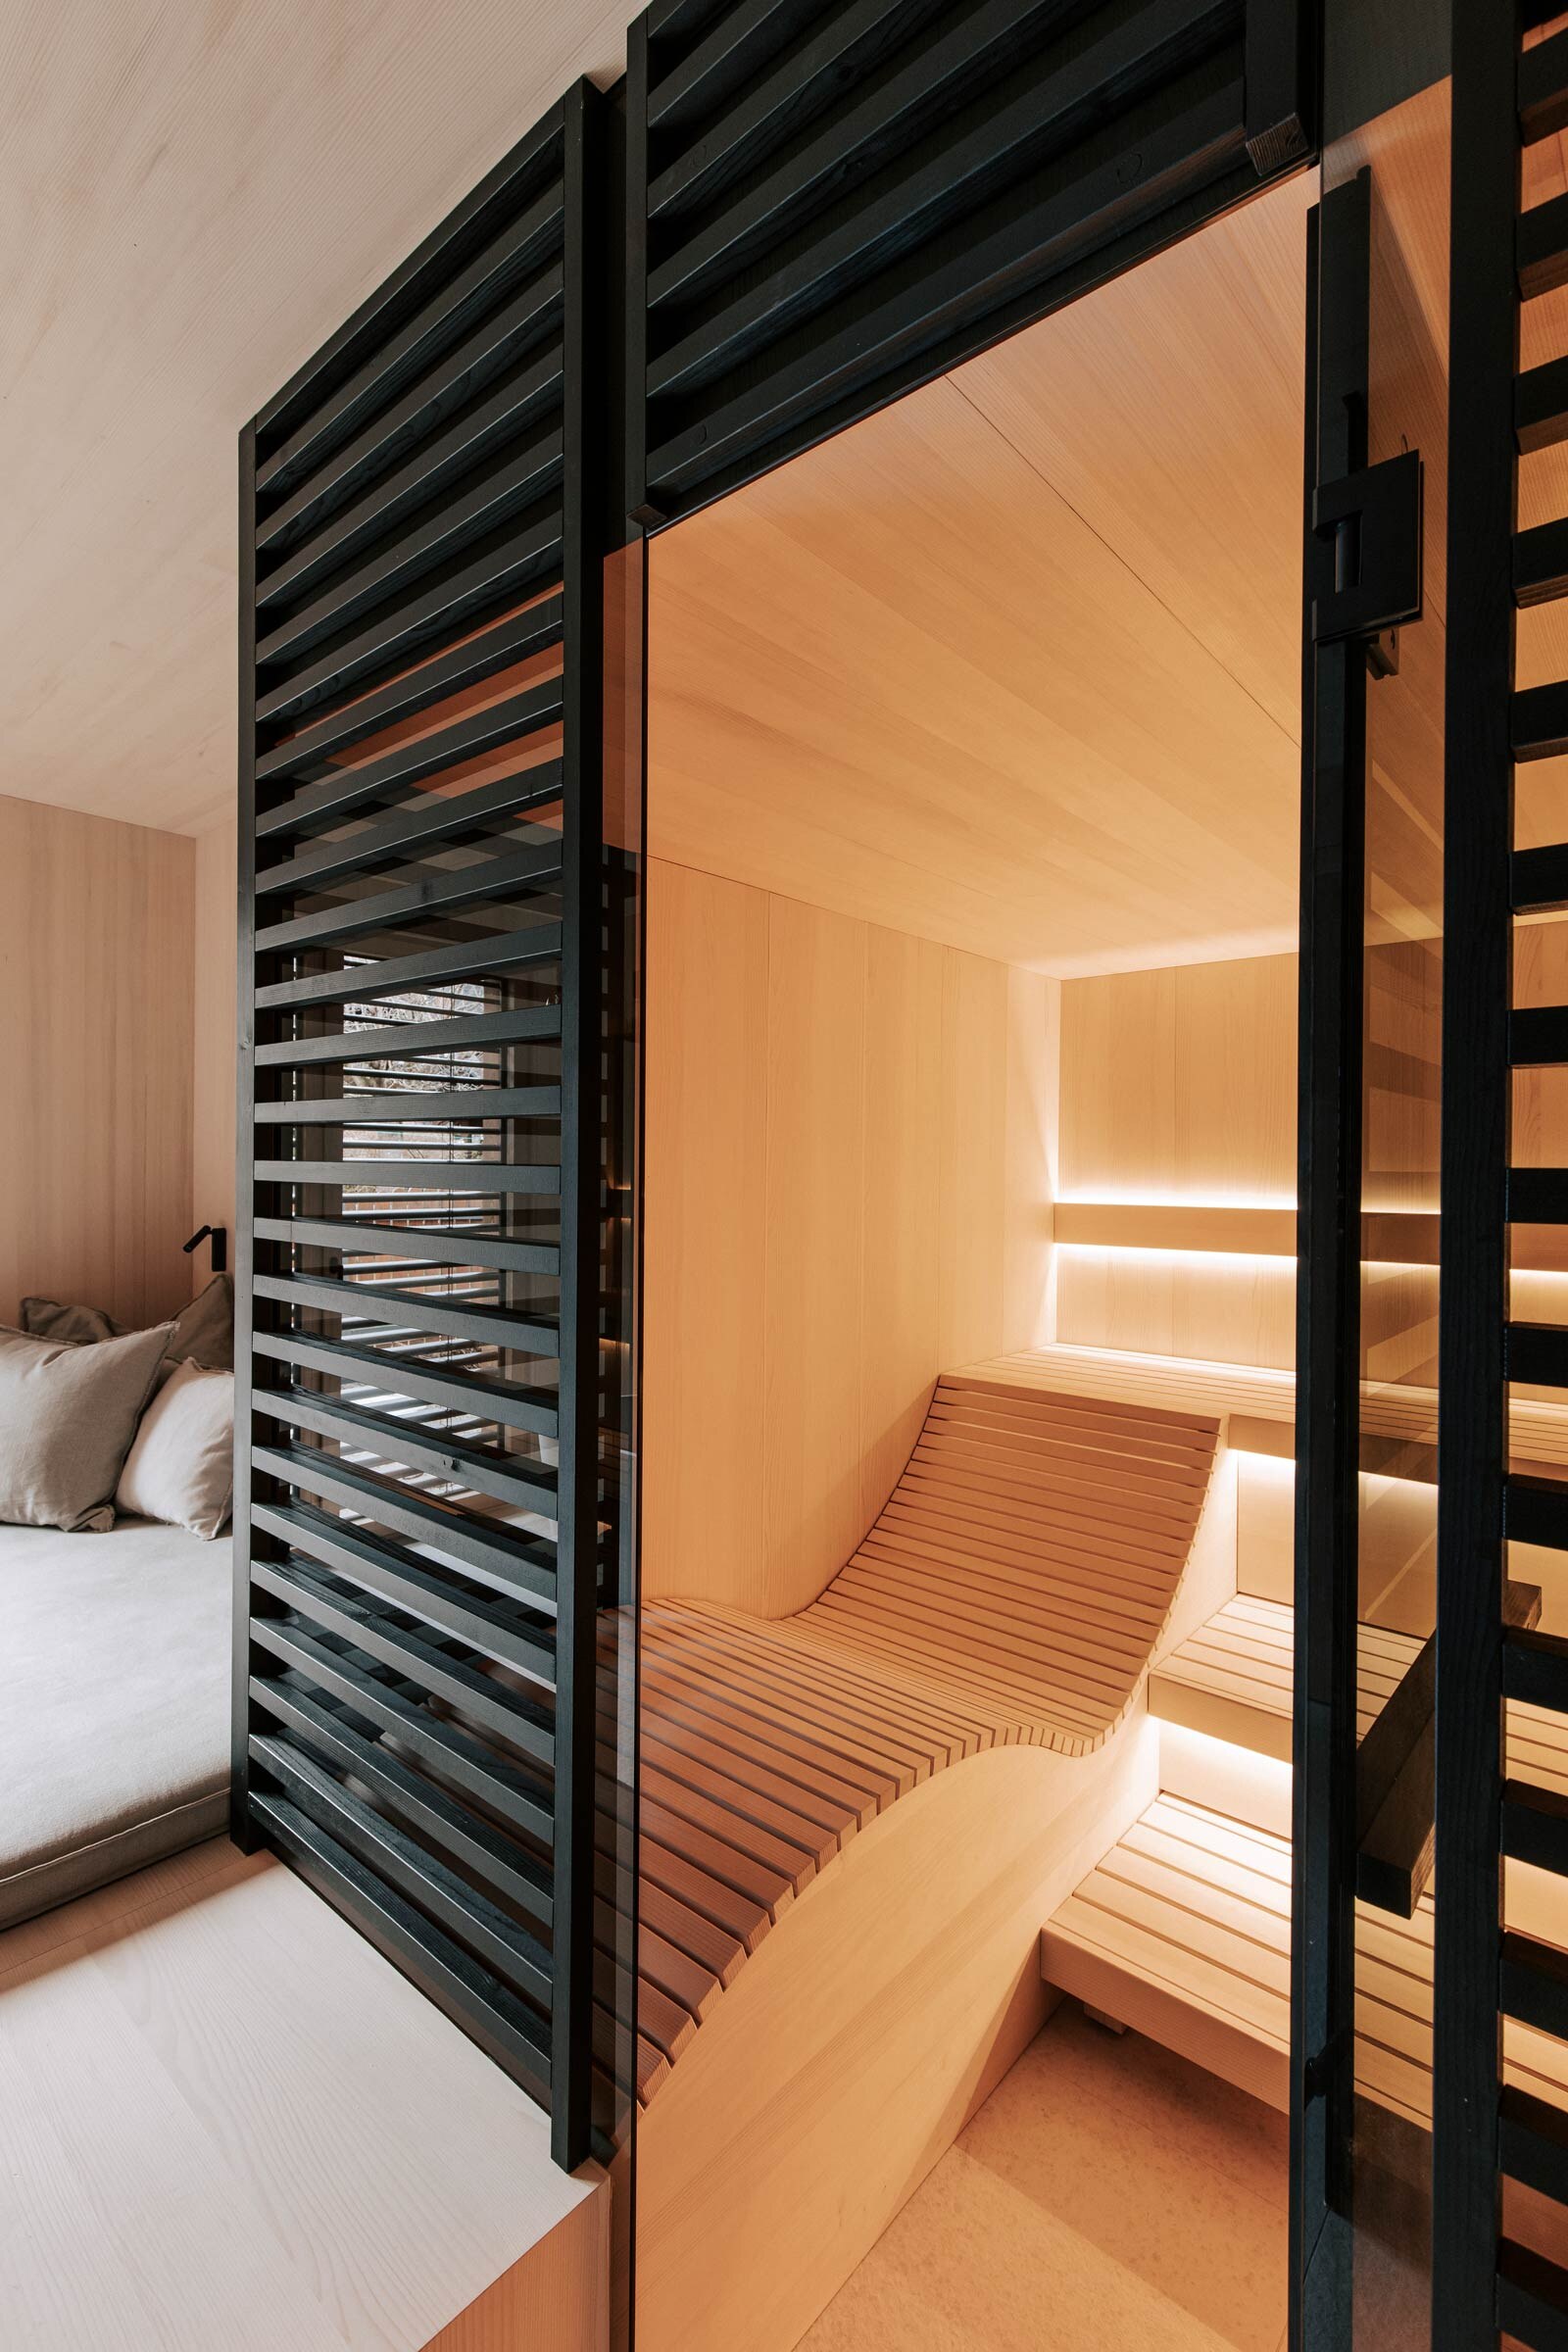 Massgeschneiderte Sauna mit ergonomischer Liege aus Espenholz, getoenter Panorama-Glasfront, sowie raumhoher Verkleidung aus schwarz getoenten Holzstreben als Sichtschutz.